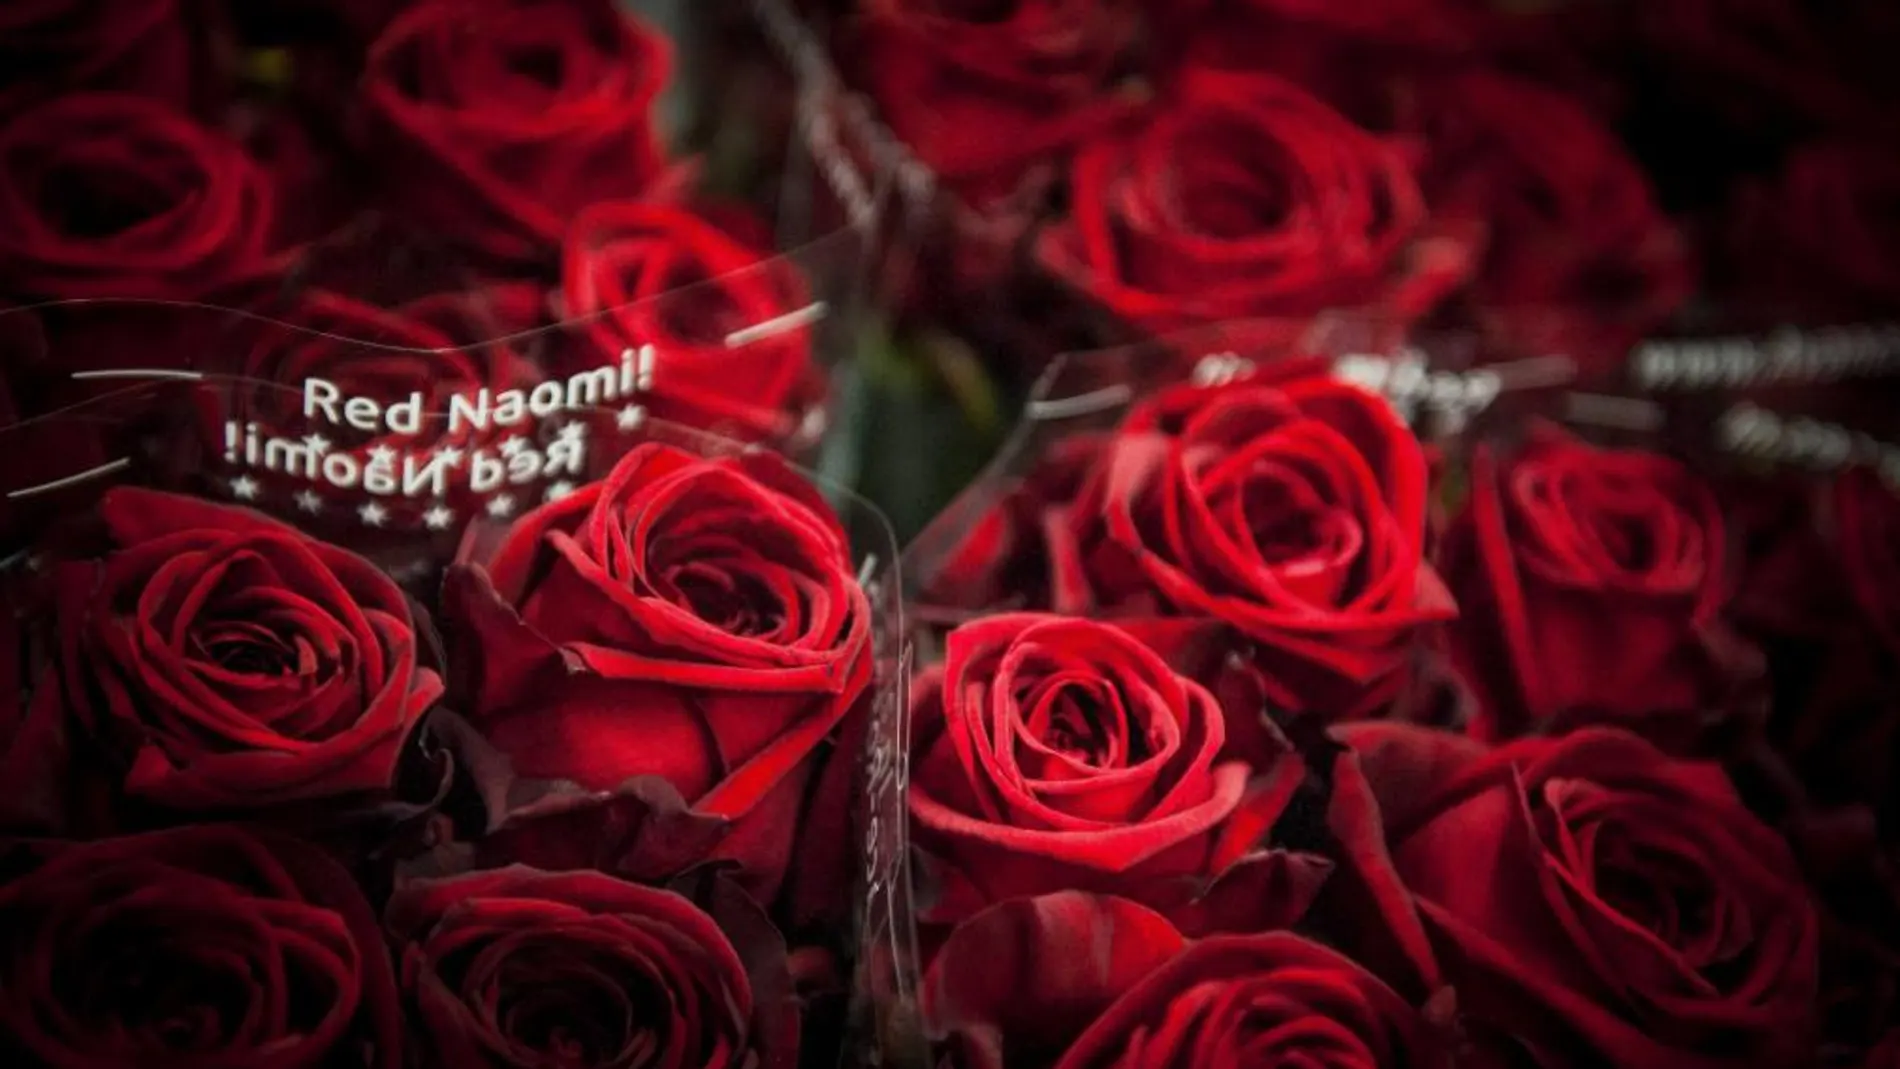 Rosas rojas son expuestas en una subasta floral en Aalsmeer (Holanda) para la celebración del día de San Valentín